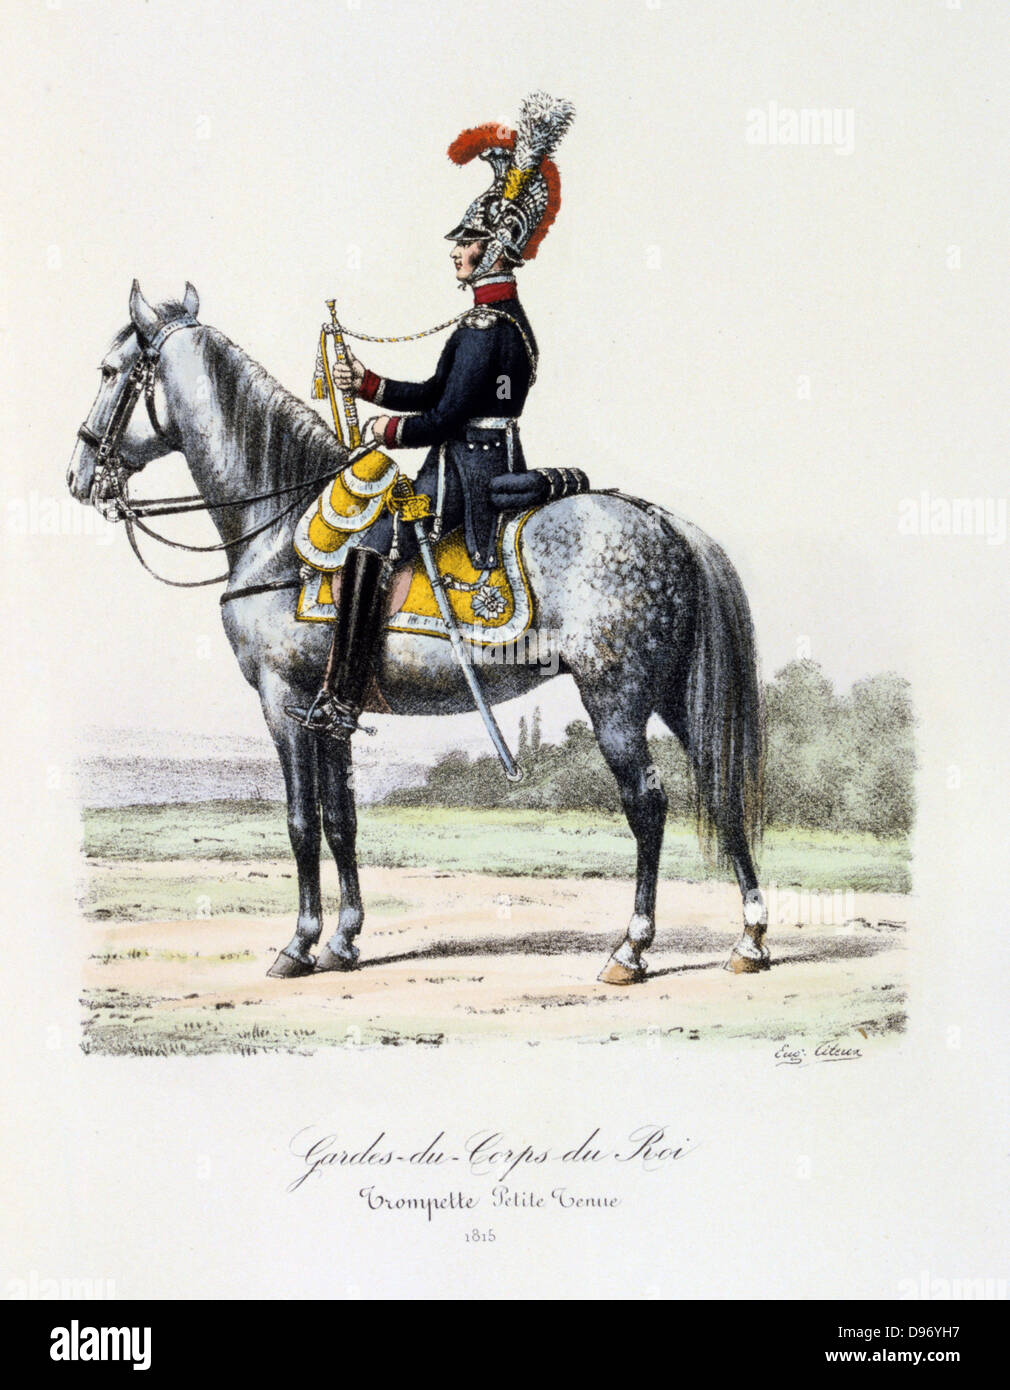 Mounted trumpeter of the King's guard, 1815. From 'Histoire de la maison militaire du Roi de 1814 a 1830' by Eugene Titeux, Paris, 1890. Stock Photo